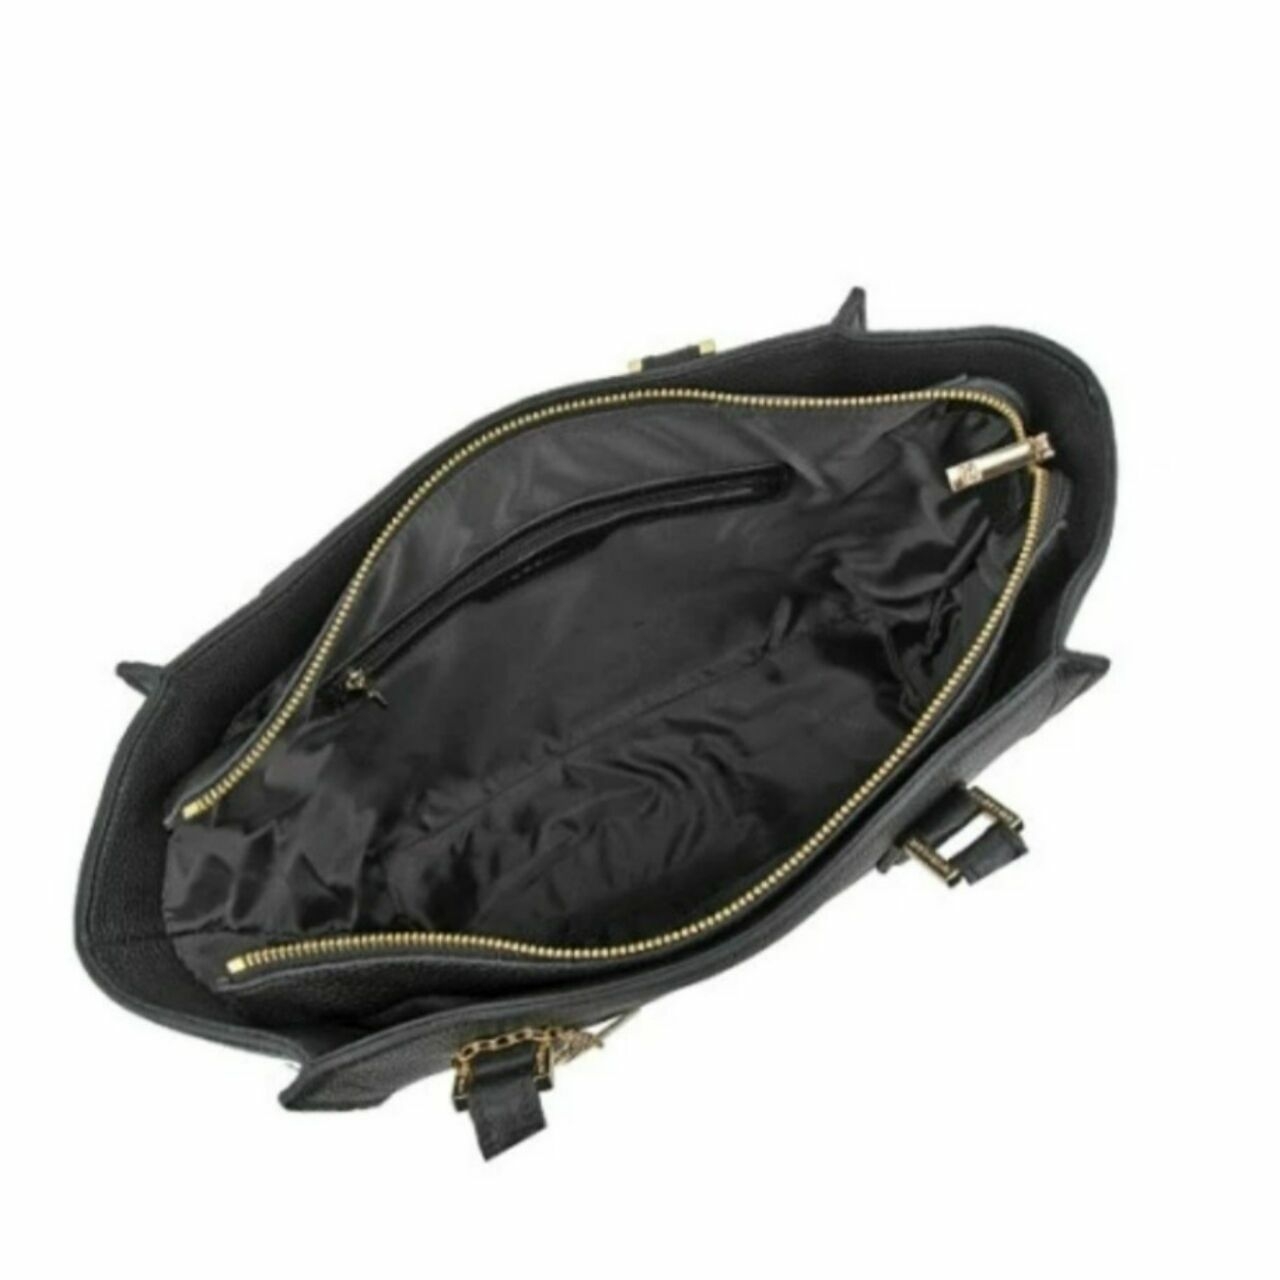 Gobelini Black Emery Tote Bag